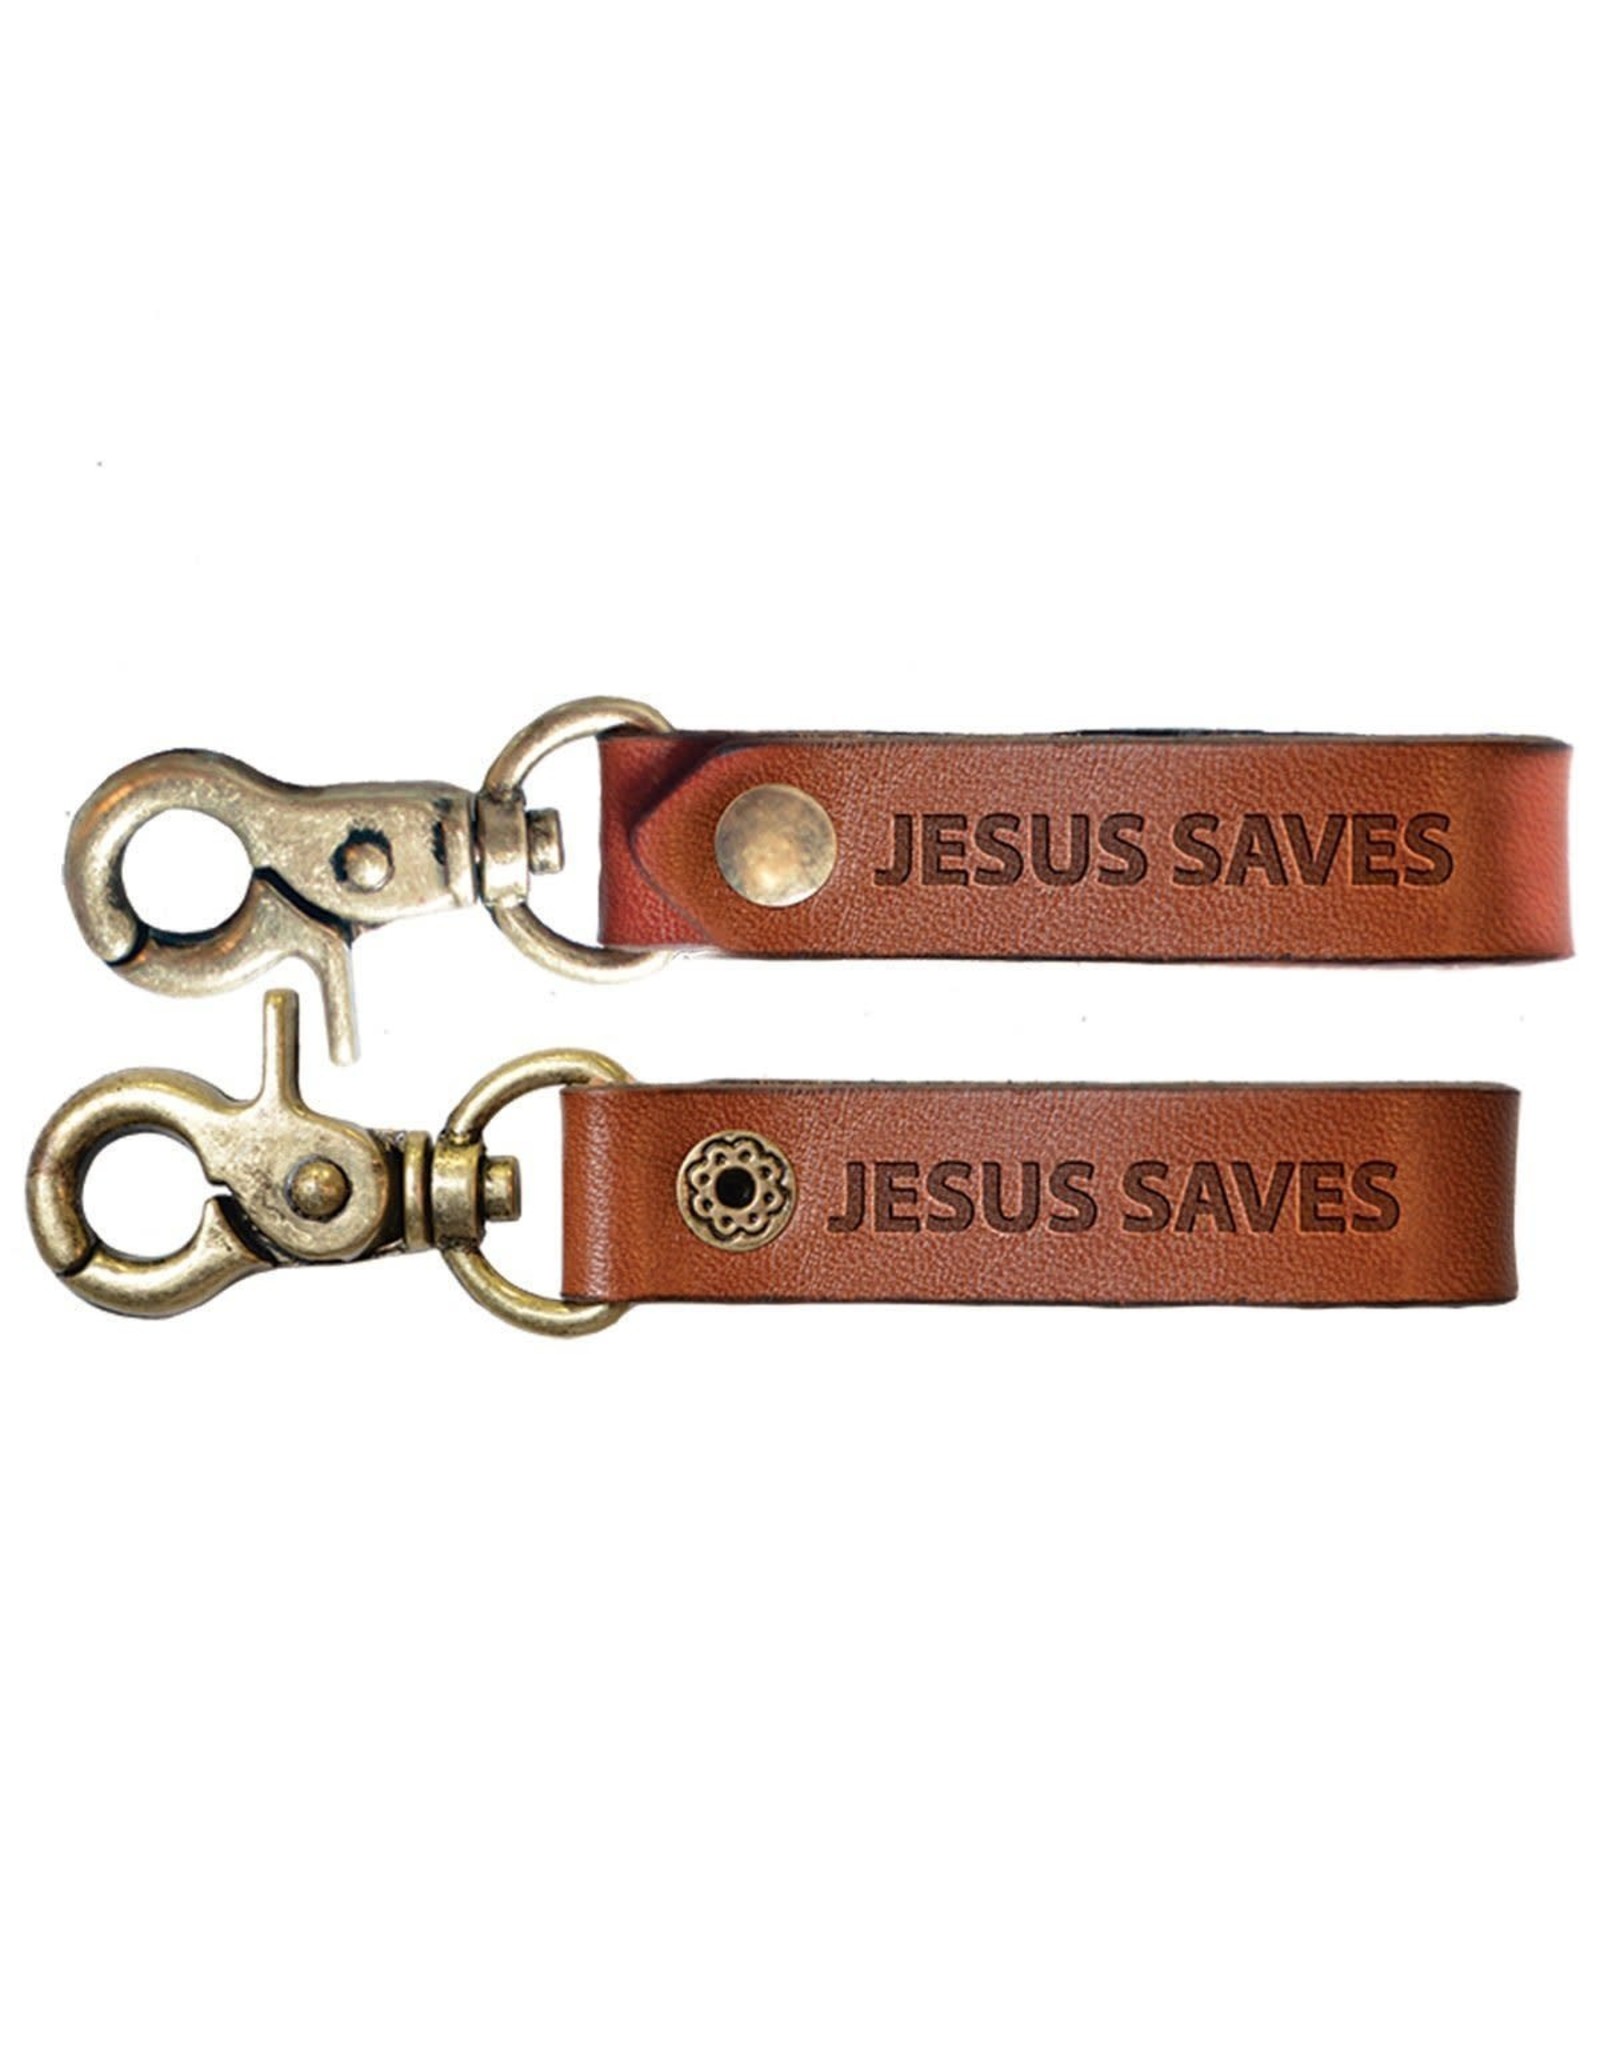 Faith Gear Faith Gear® - Guy's Leather Keychain - Jesus Saves